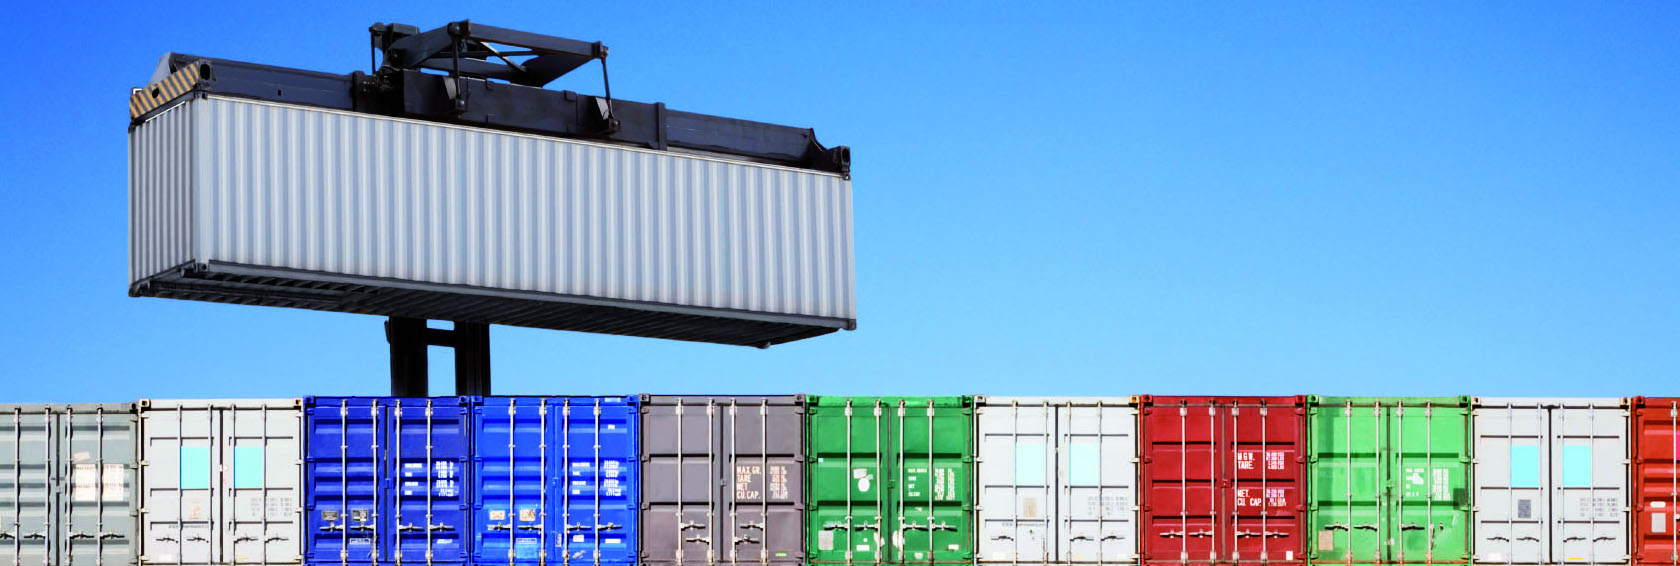 Любой тип контейнера имеет стандартизированный размер и предназначение